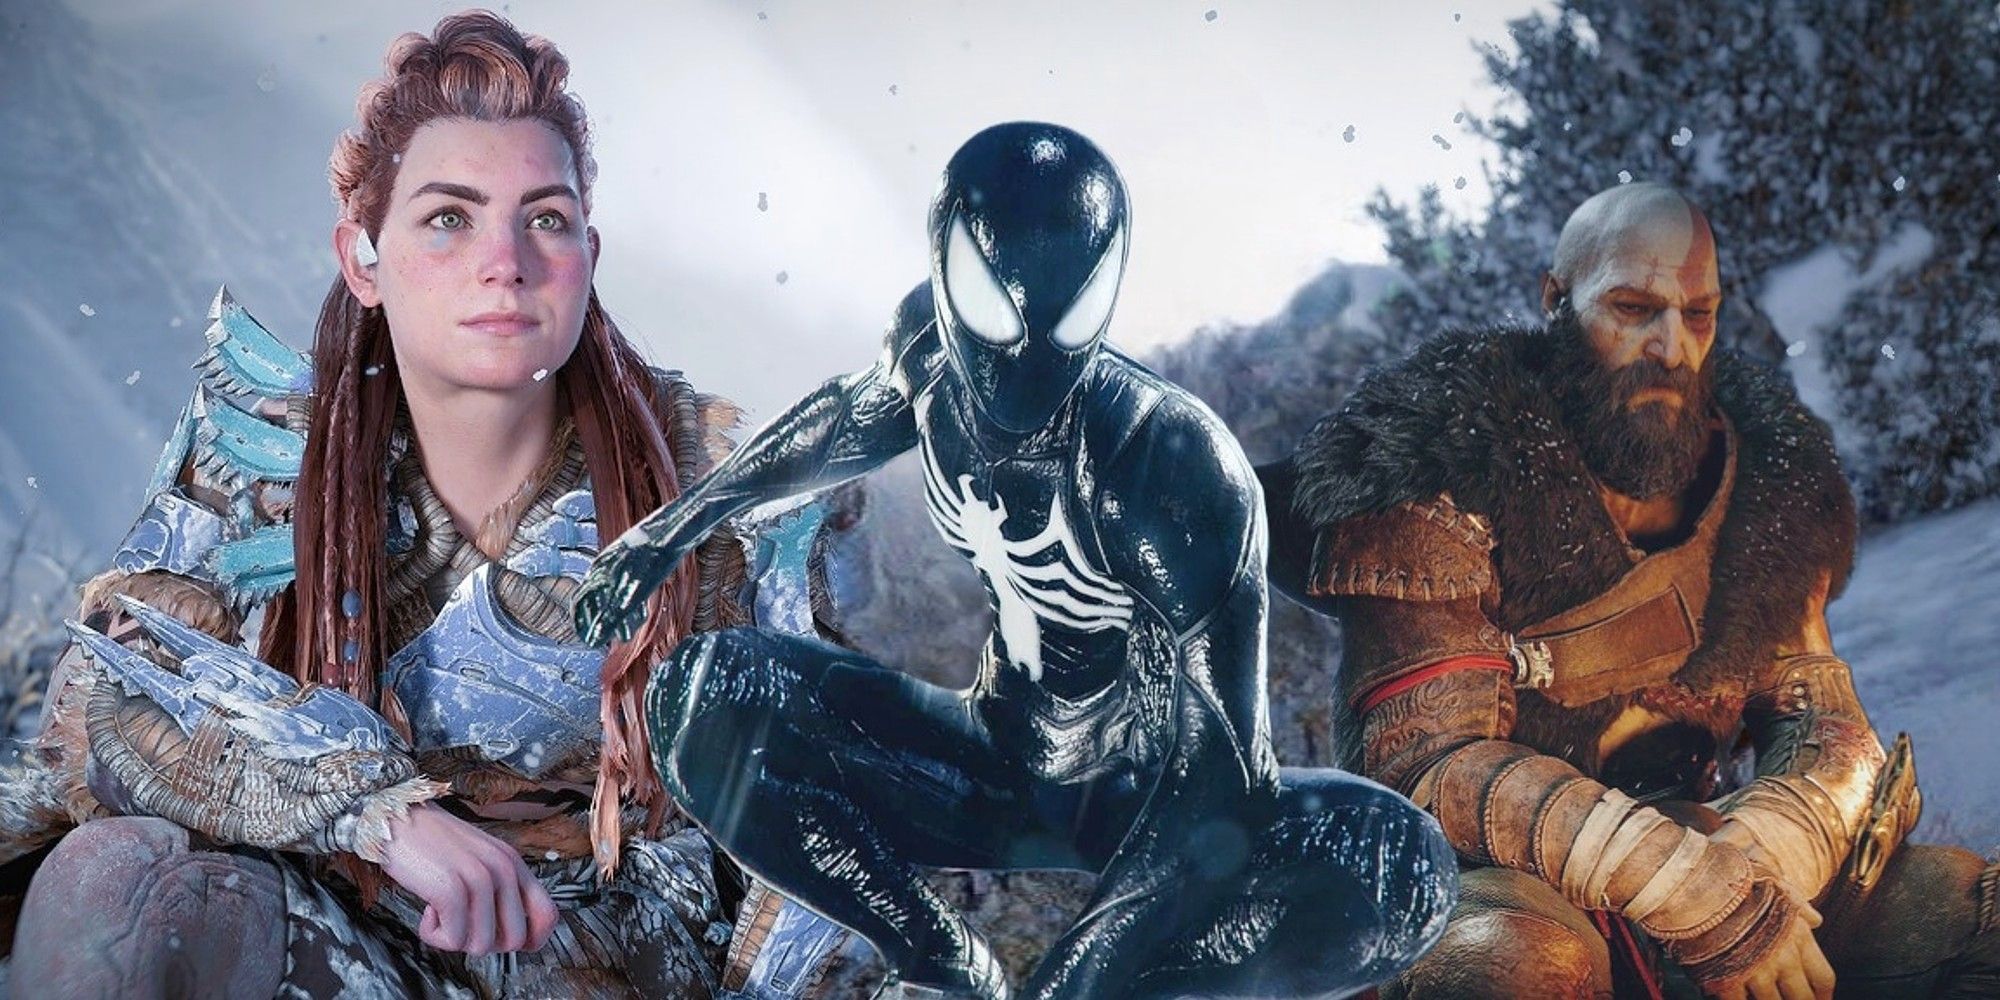 orizon Forbidden West's Aloy, Marvel's Spider-Man 2's Peter Parker In Black Suit, and God of War Ragnarok's Kratos Mash-Up